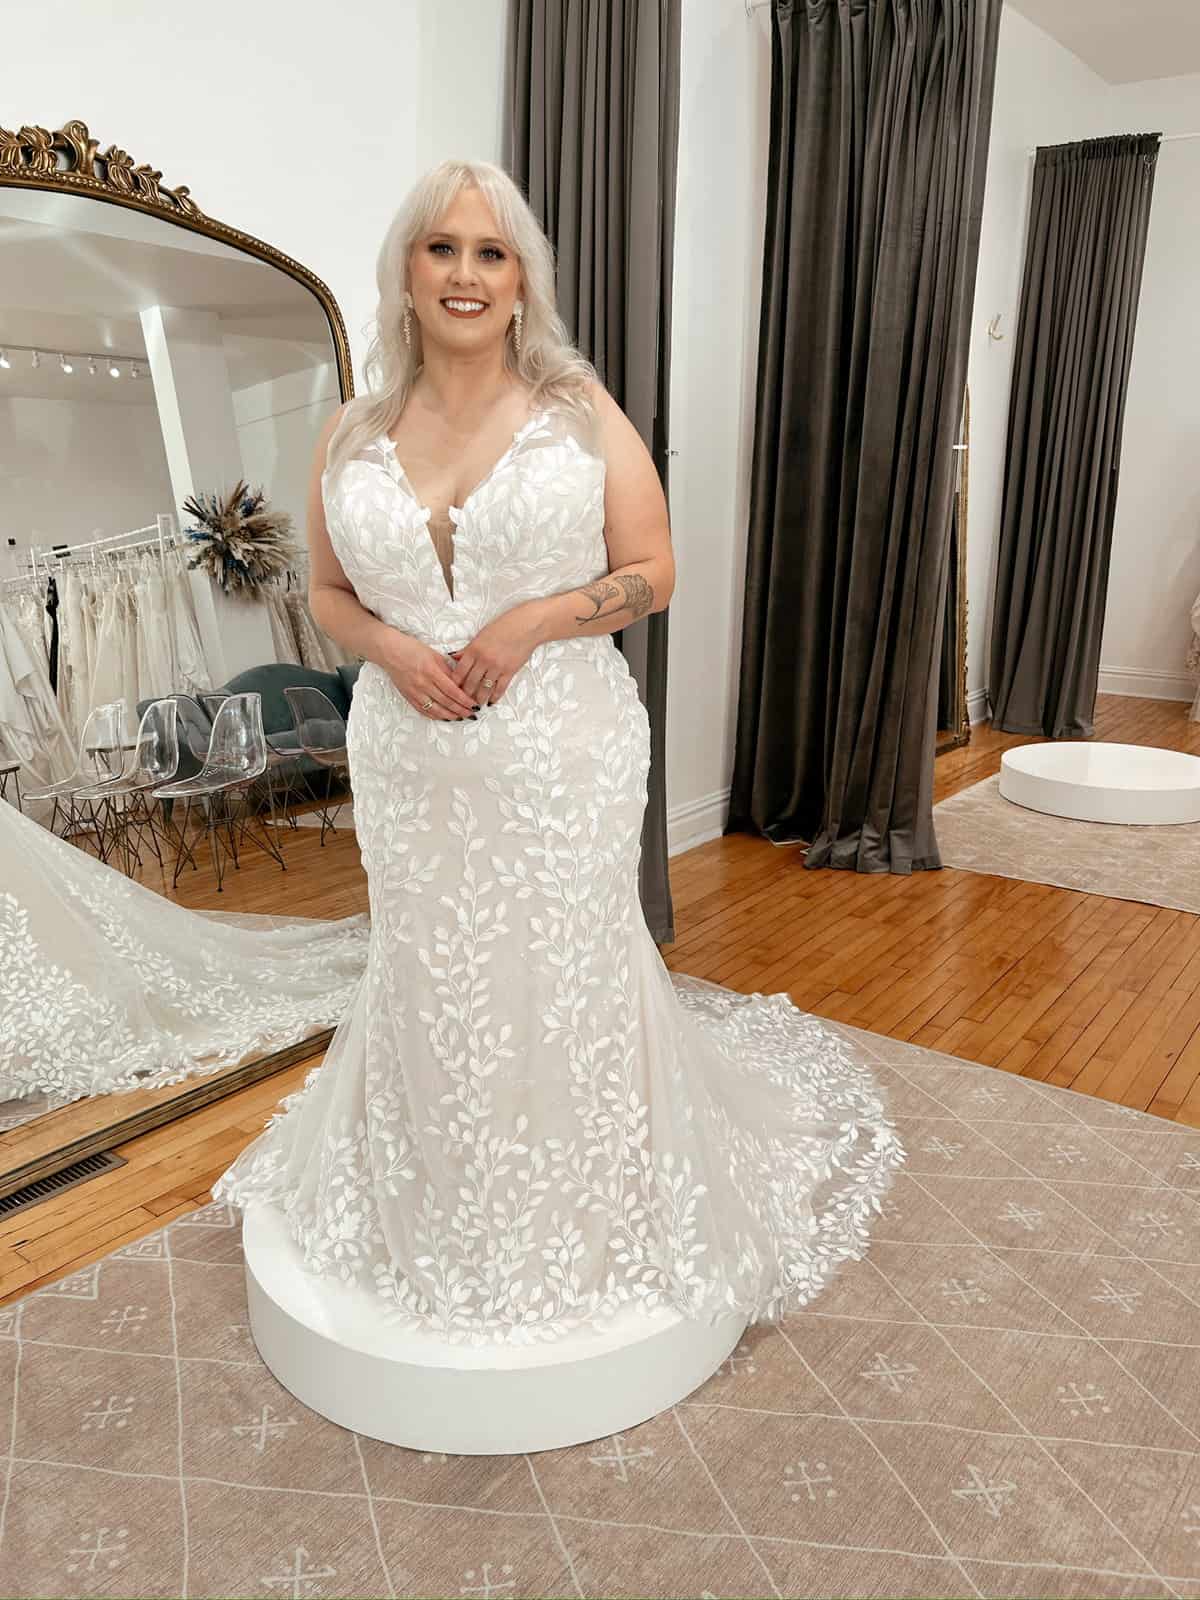 Savvy Bridal Saint Louis Top Rated #1 Bridal Shop